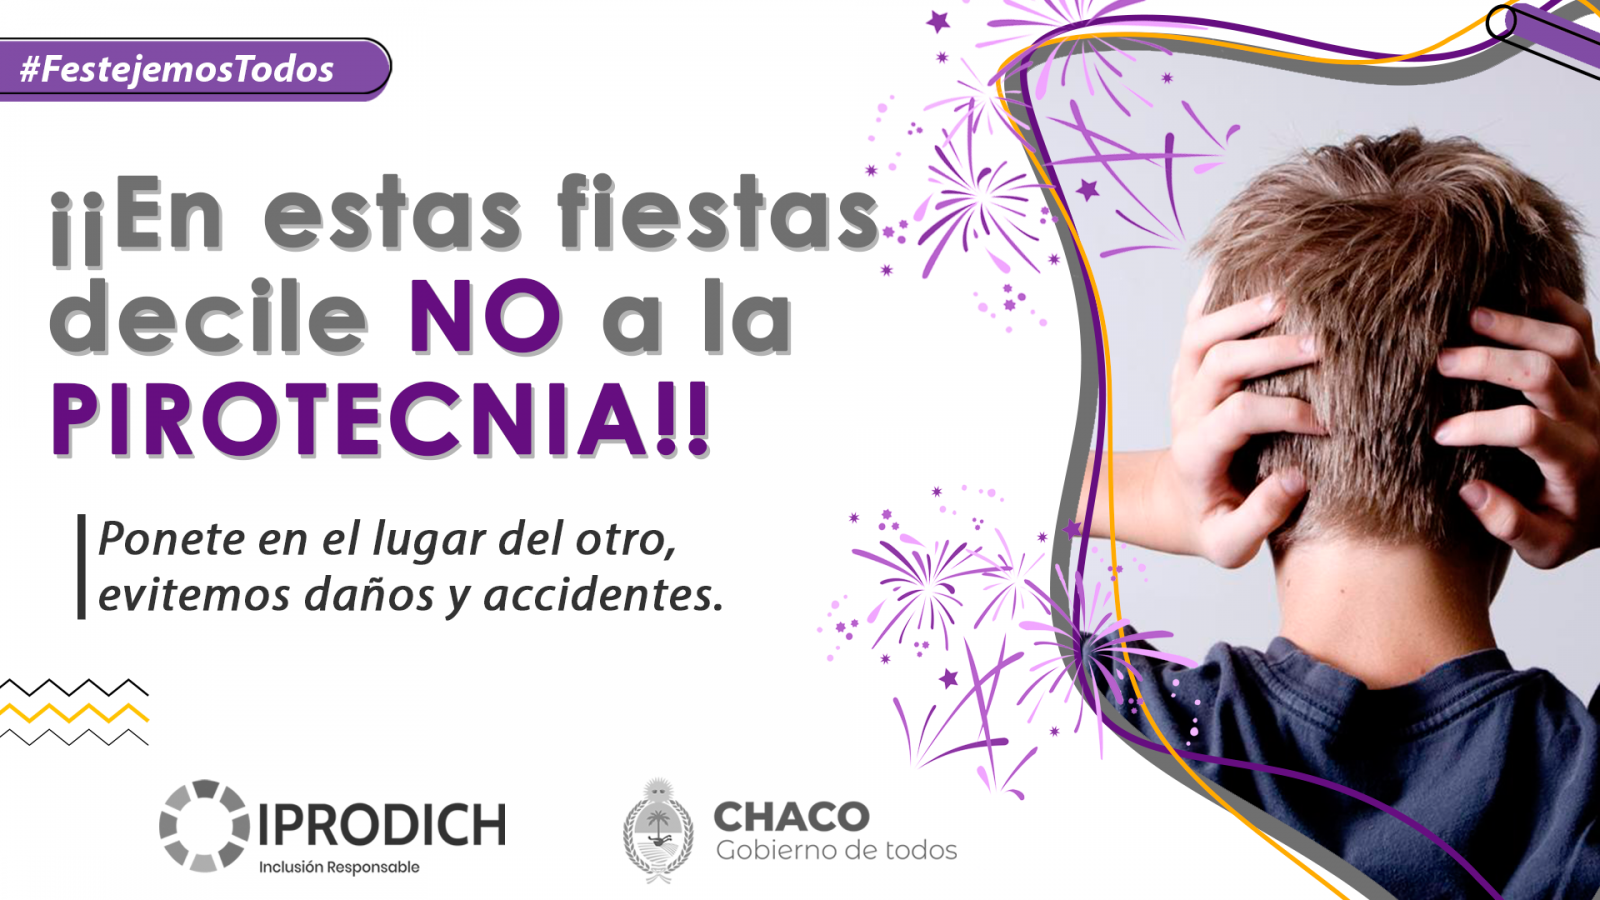 #FestejemosTodos: IPRODICH invita a celebrar las Fiestas sin pirotecnia para no afectar a personas con discapacidad